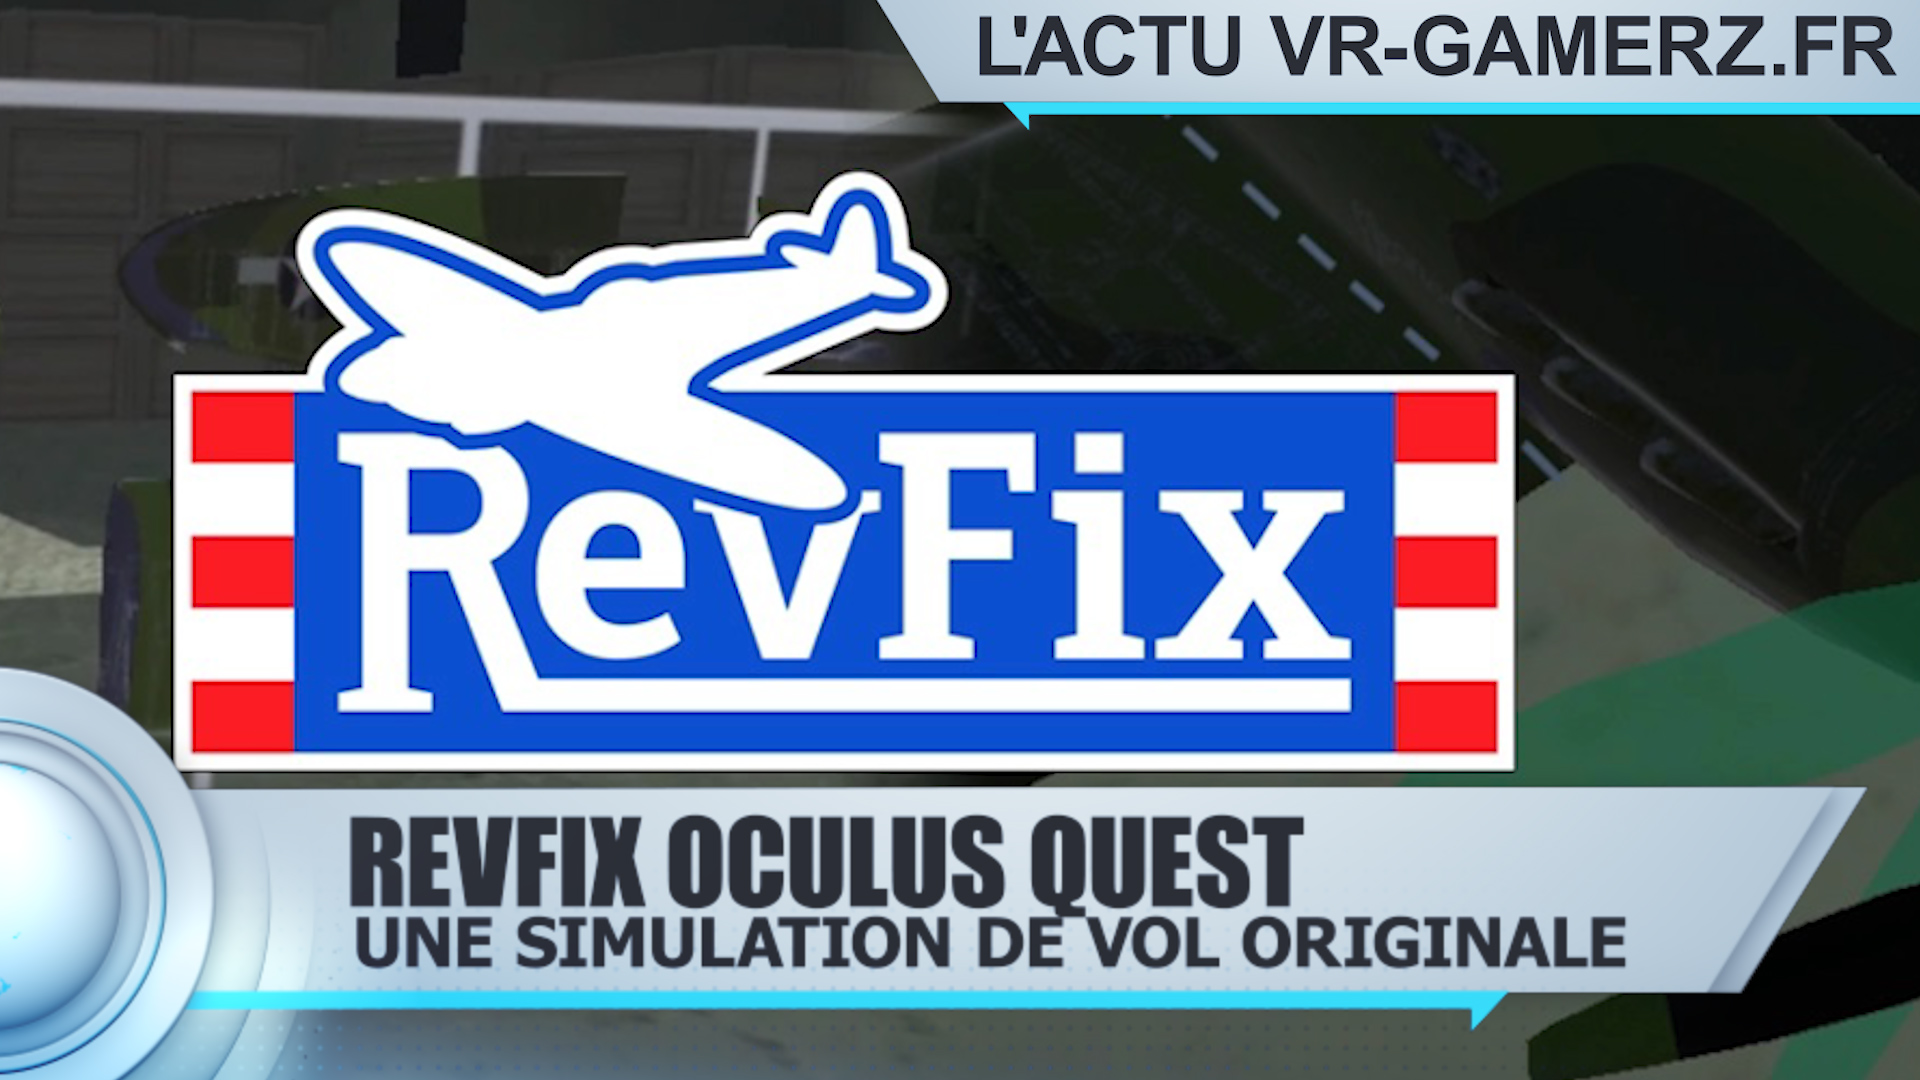 RevFix Oculus quest est disponible sur Sidequest